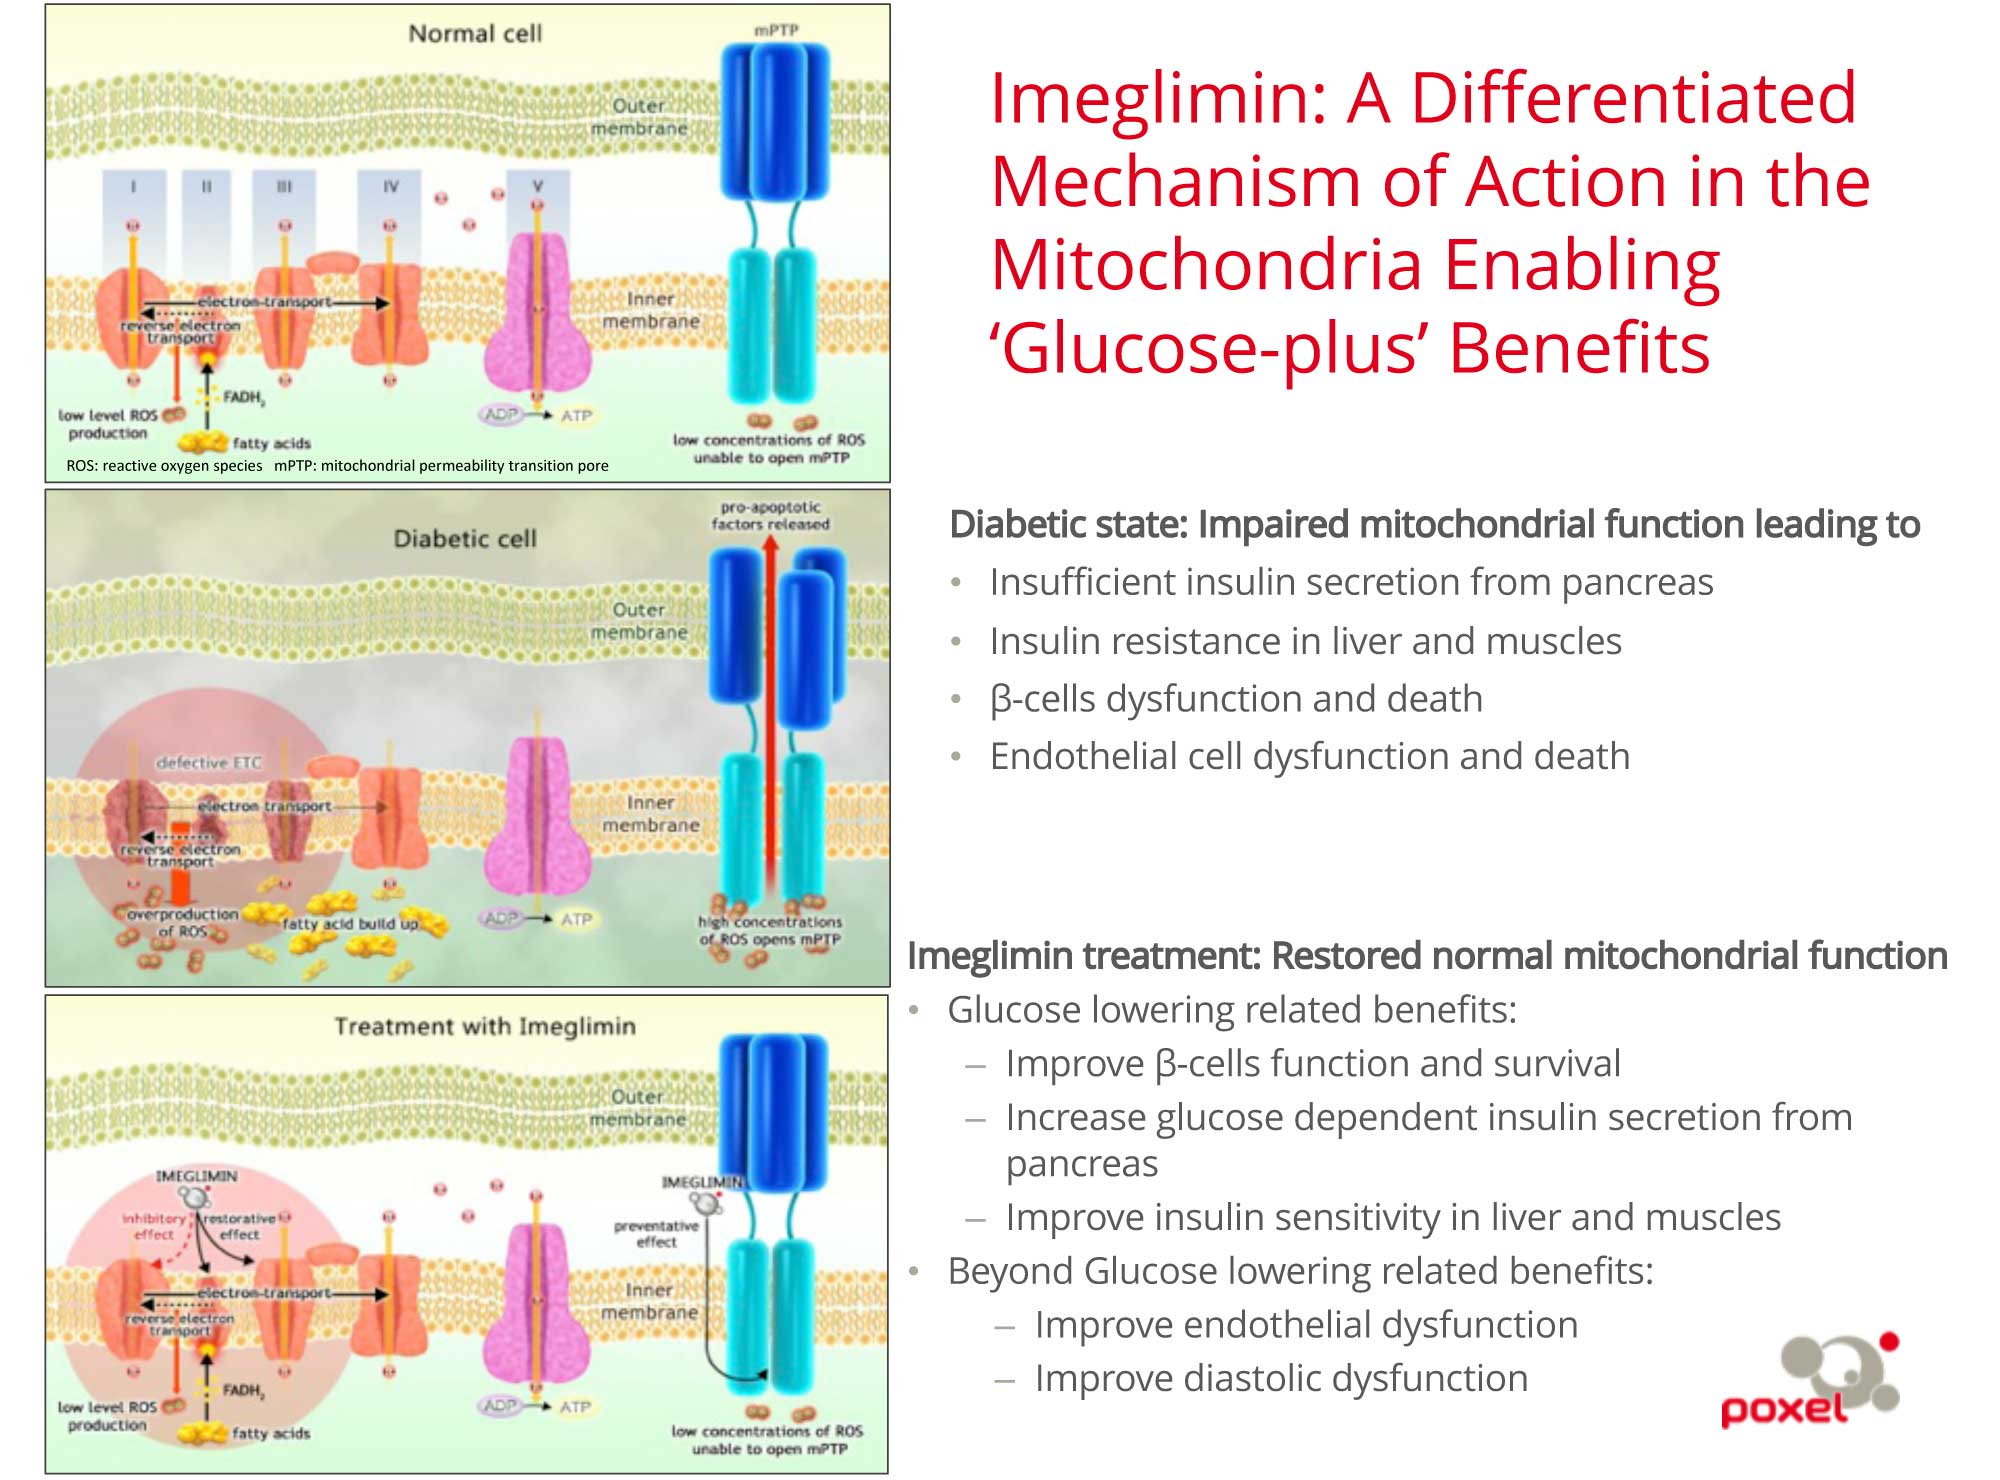 imeglimin moa 02 - Twymeeg: Completely New Drug for Treatment of Type 2 Diabetes Mellitus